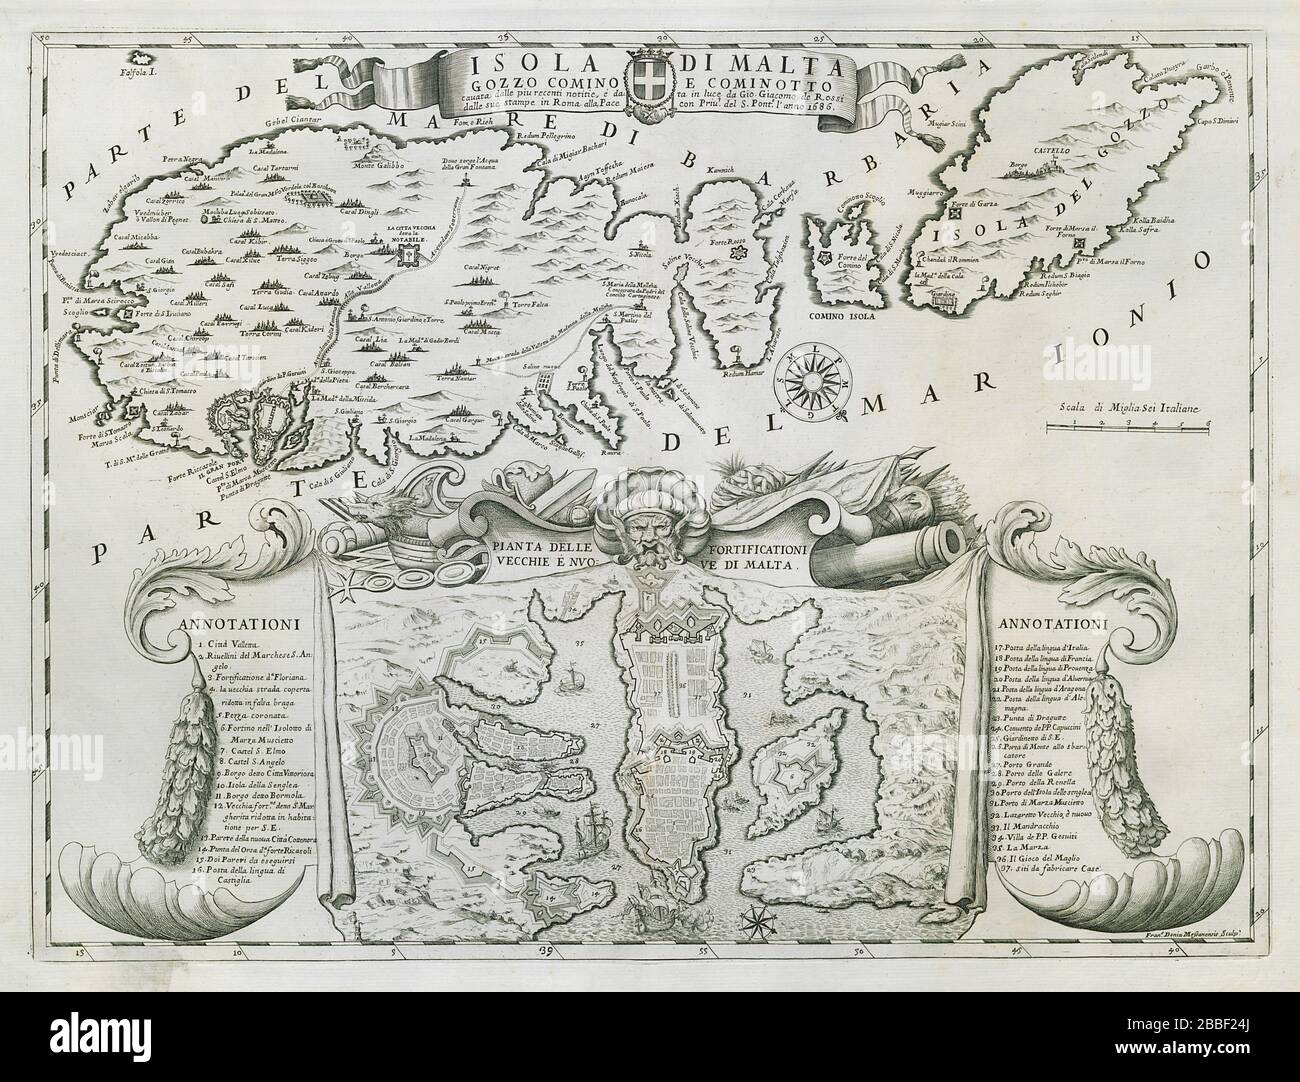 Isola di Malta, Gozo, Comino e Cominotto. DE ROSSI 1686 alte Karte Stockfoto